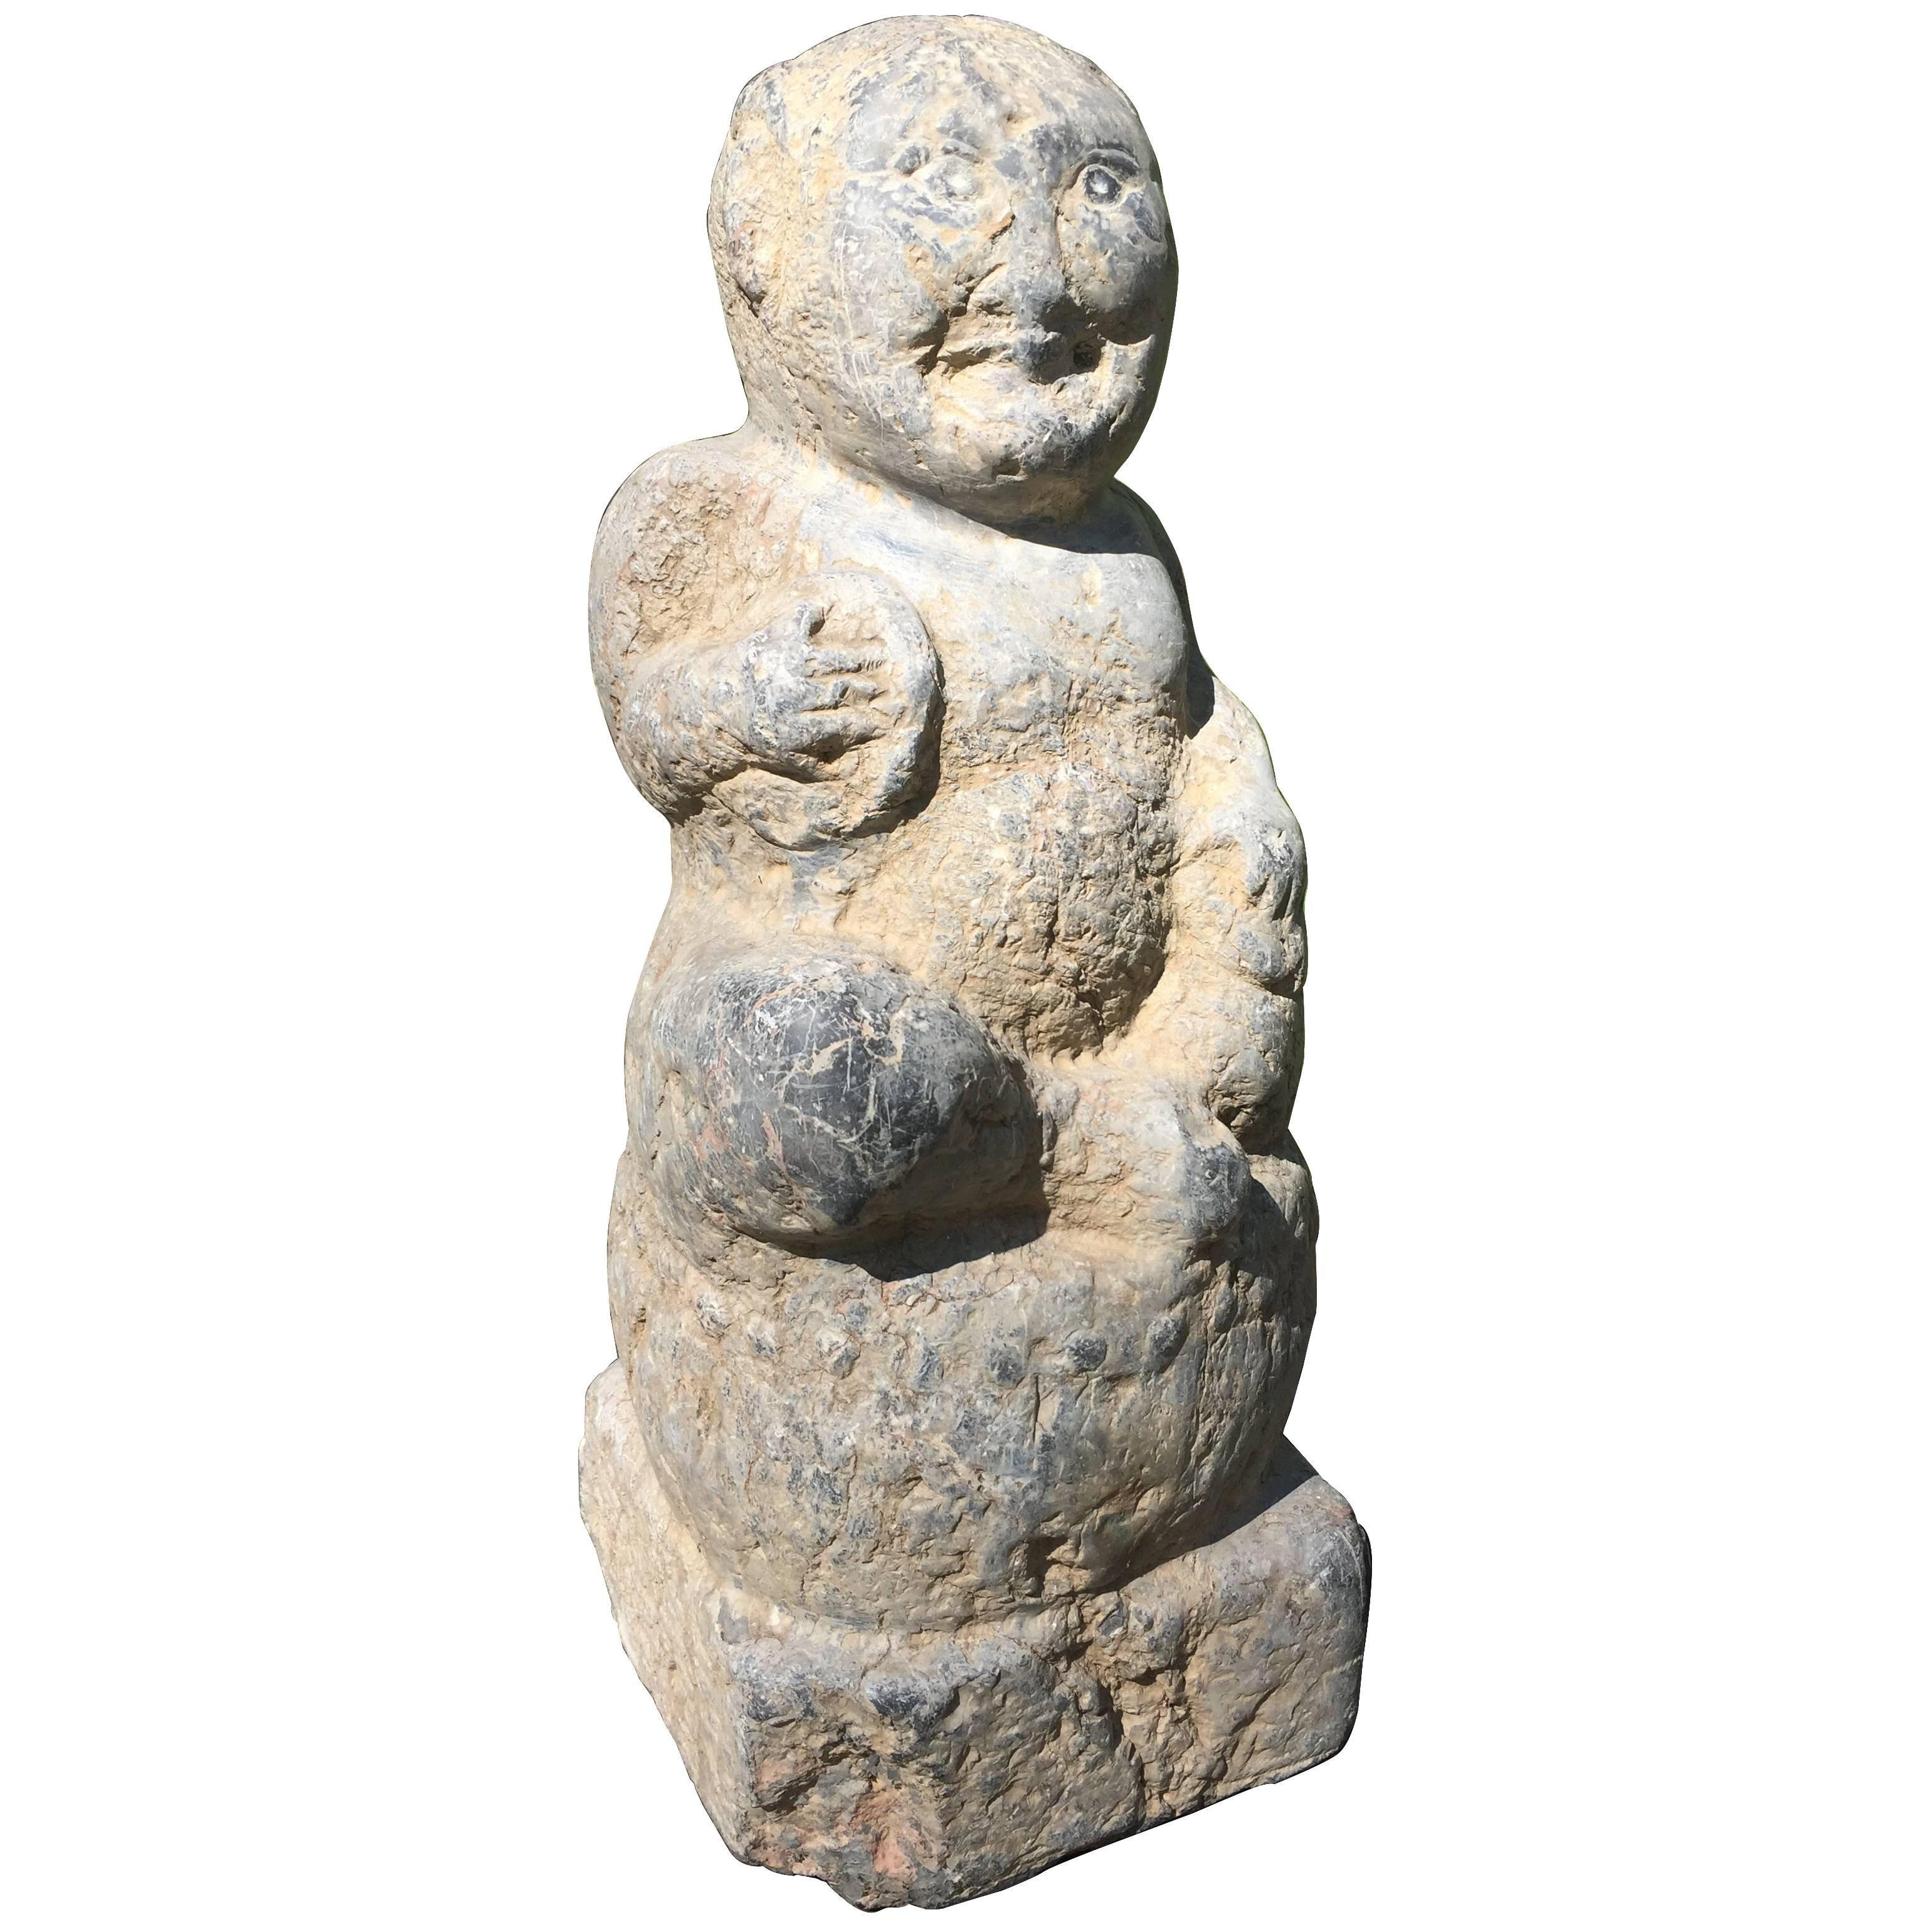 China, Bewirtungsgegenständer aus alten Steinen, Han-Dynastie 200 n. Chr